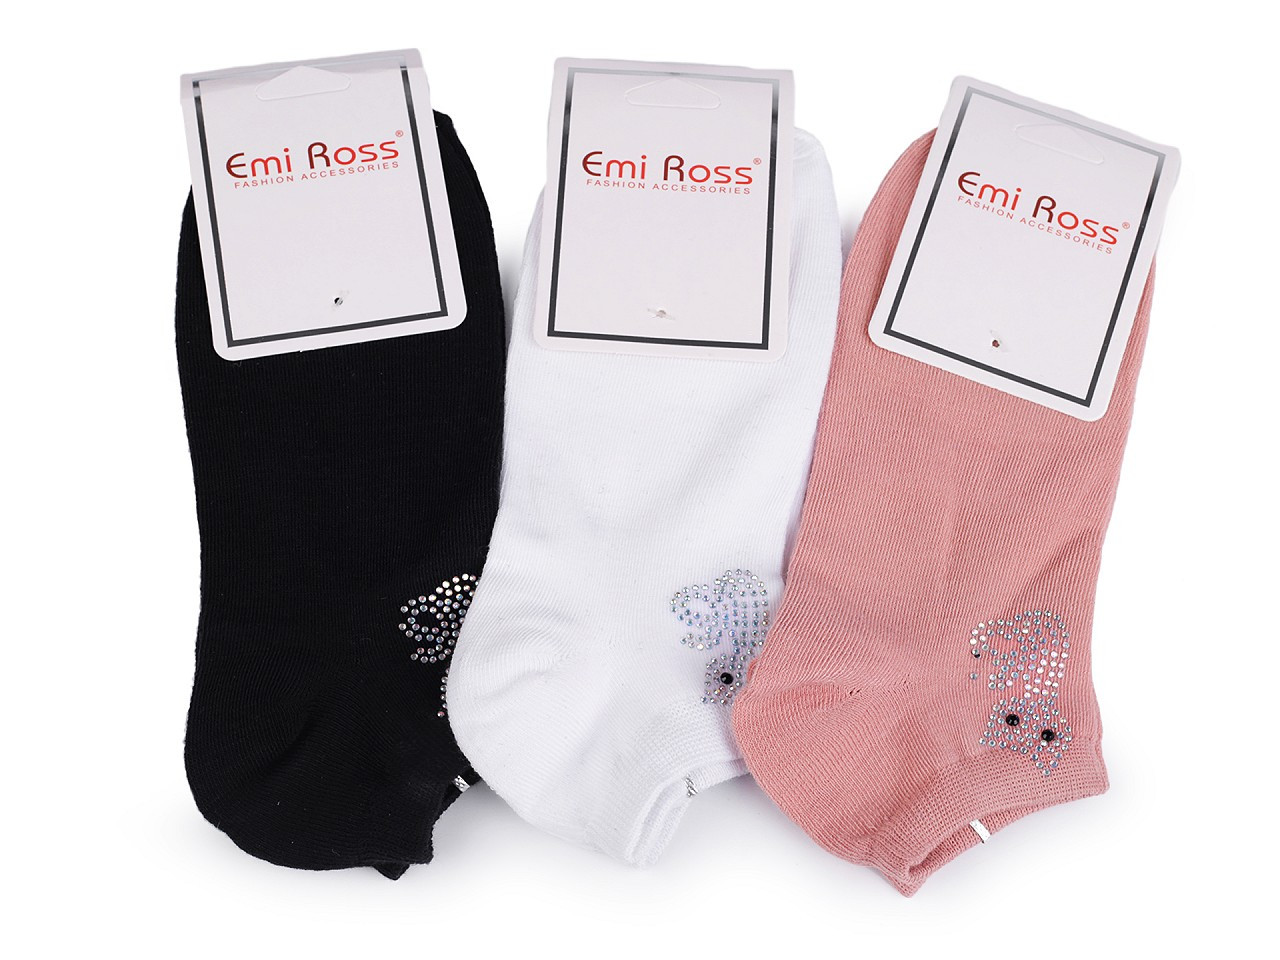 Dámské bavlněné ponožky kotníkové s kamínky Emi Ross, barva 3 (vel. 35-38) mix